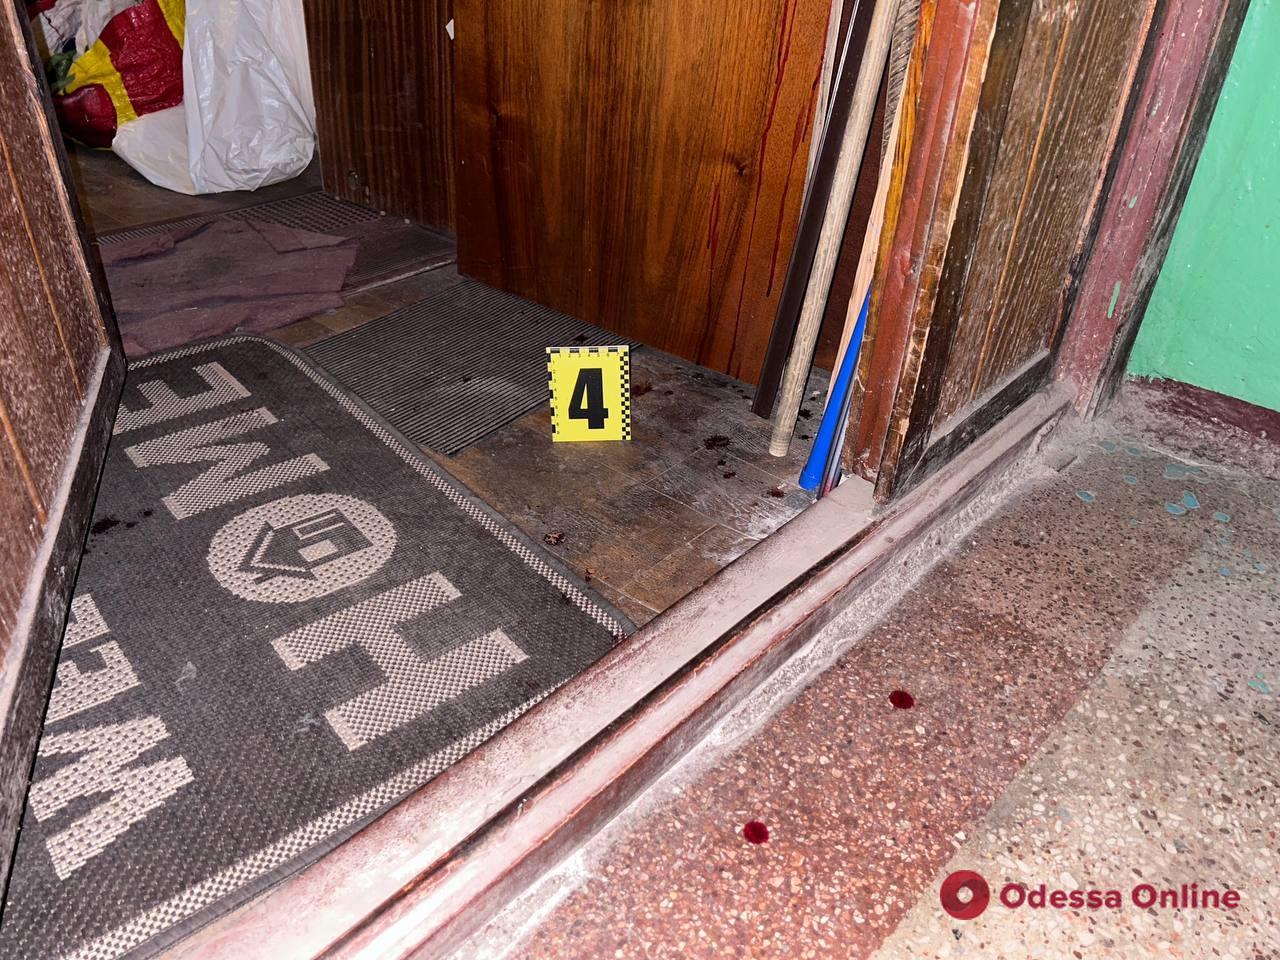 Зухвале пограбування в Одесі: зловмисник заштовхнув чоловіка до квартири, побив його та забрав гроші